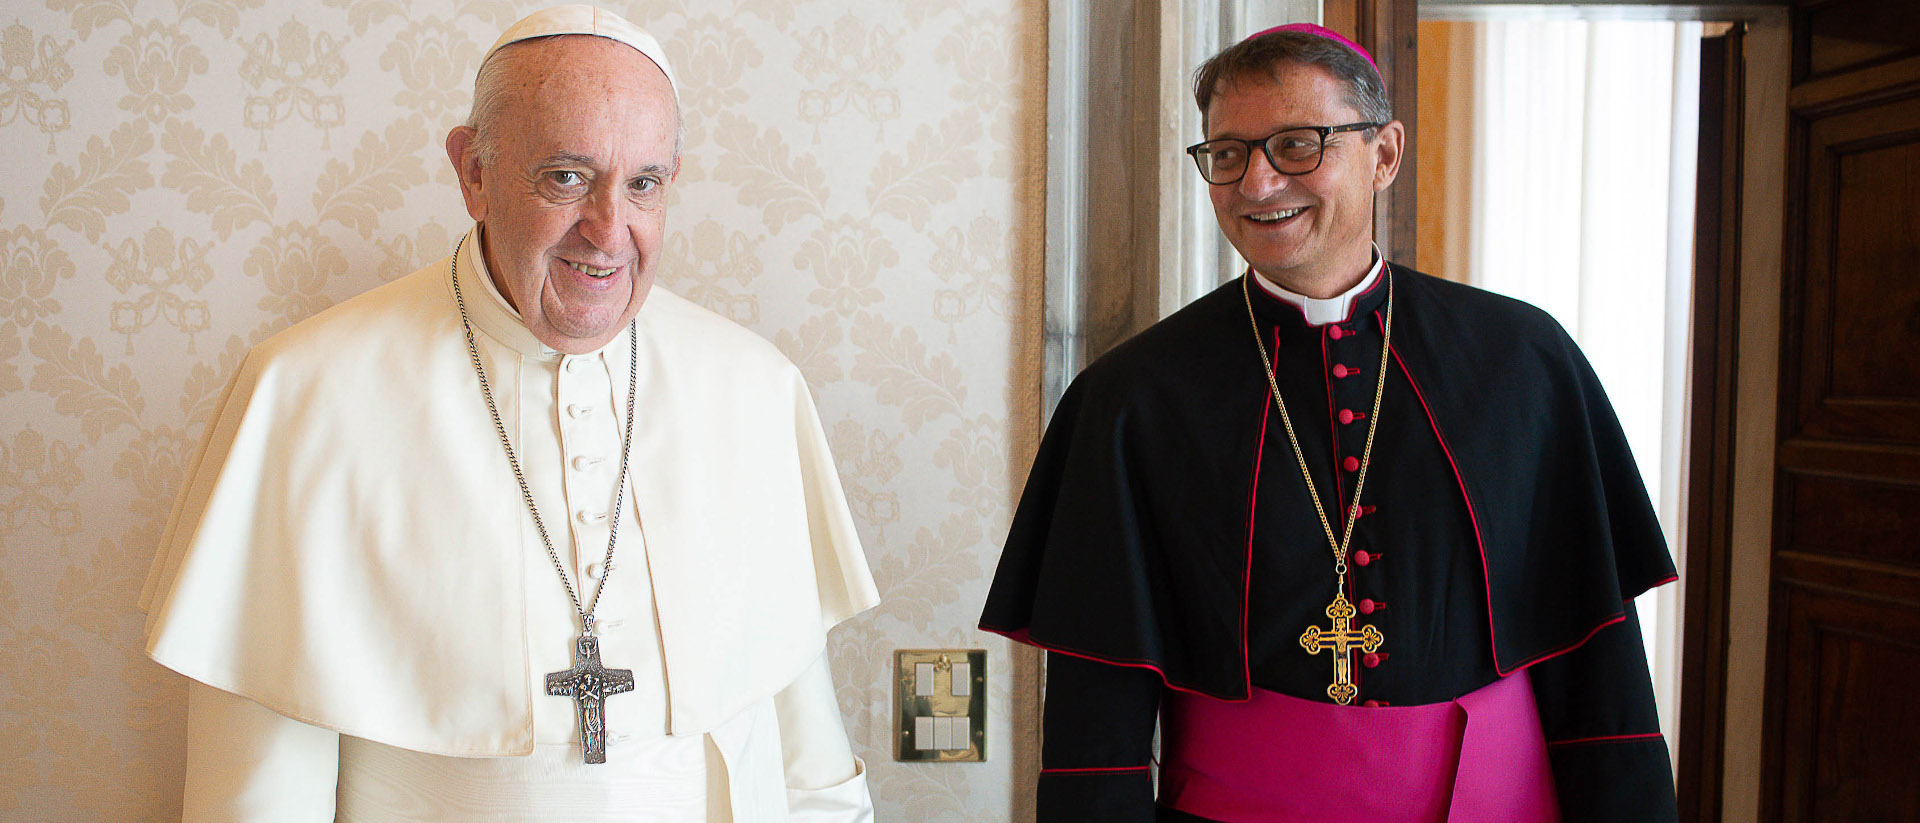 Papst Franziskus mit Bischof Felix Gmür am 29. August 2020.